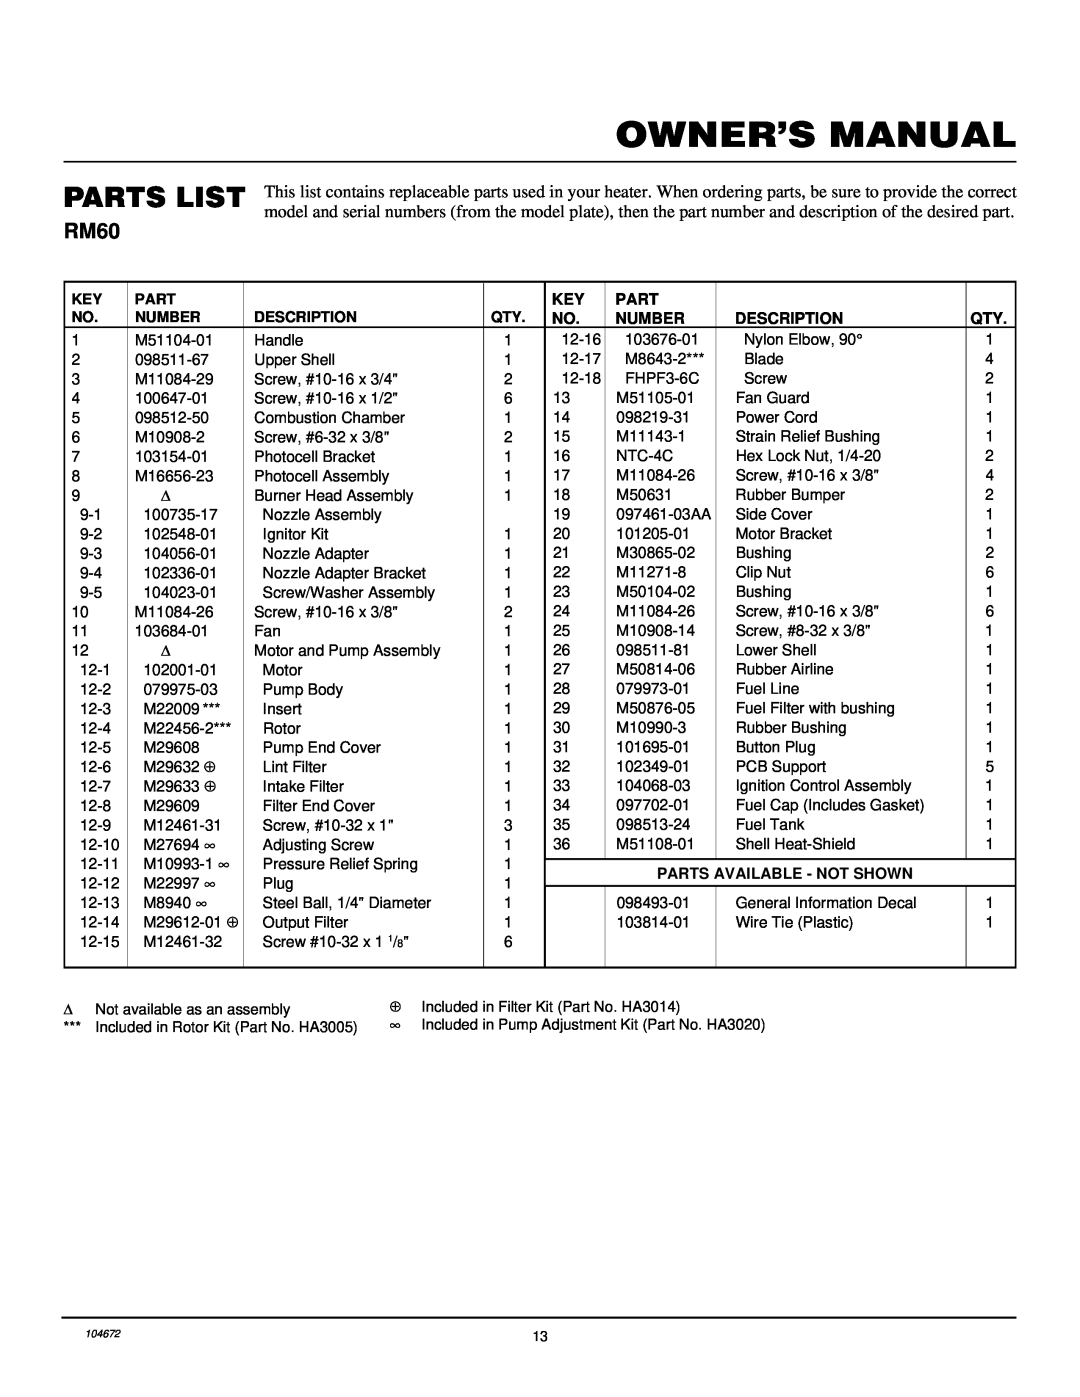 Desa RM60 owner manual Parts List, Number, Description, Parts Available - Not Shown 